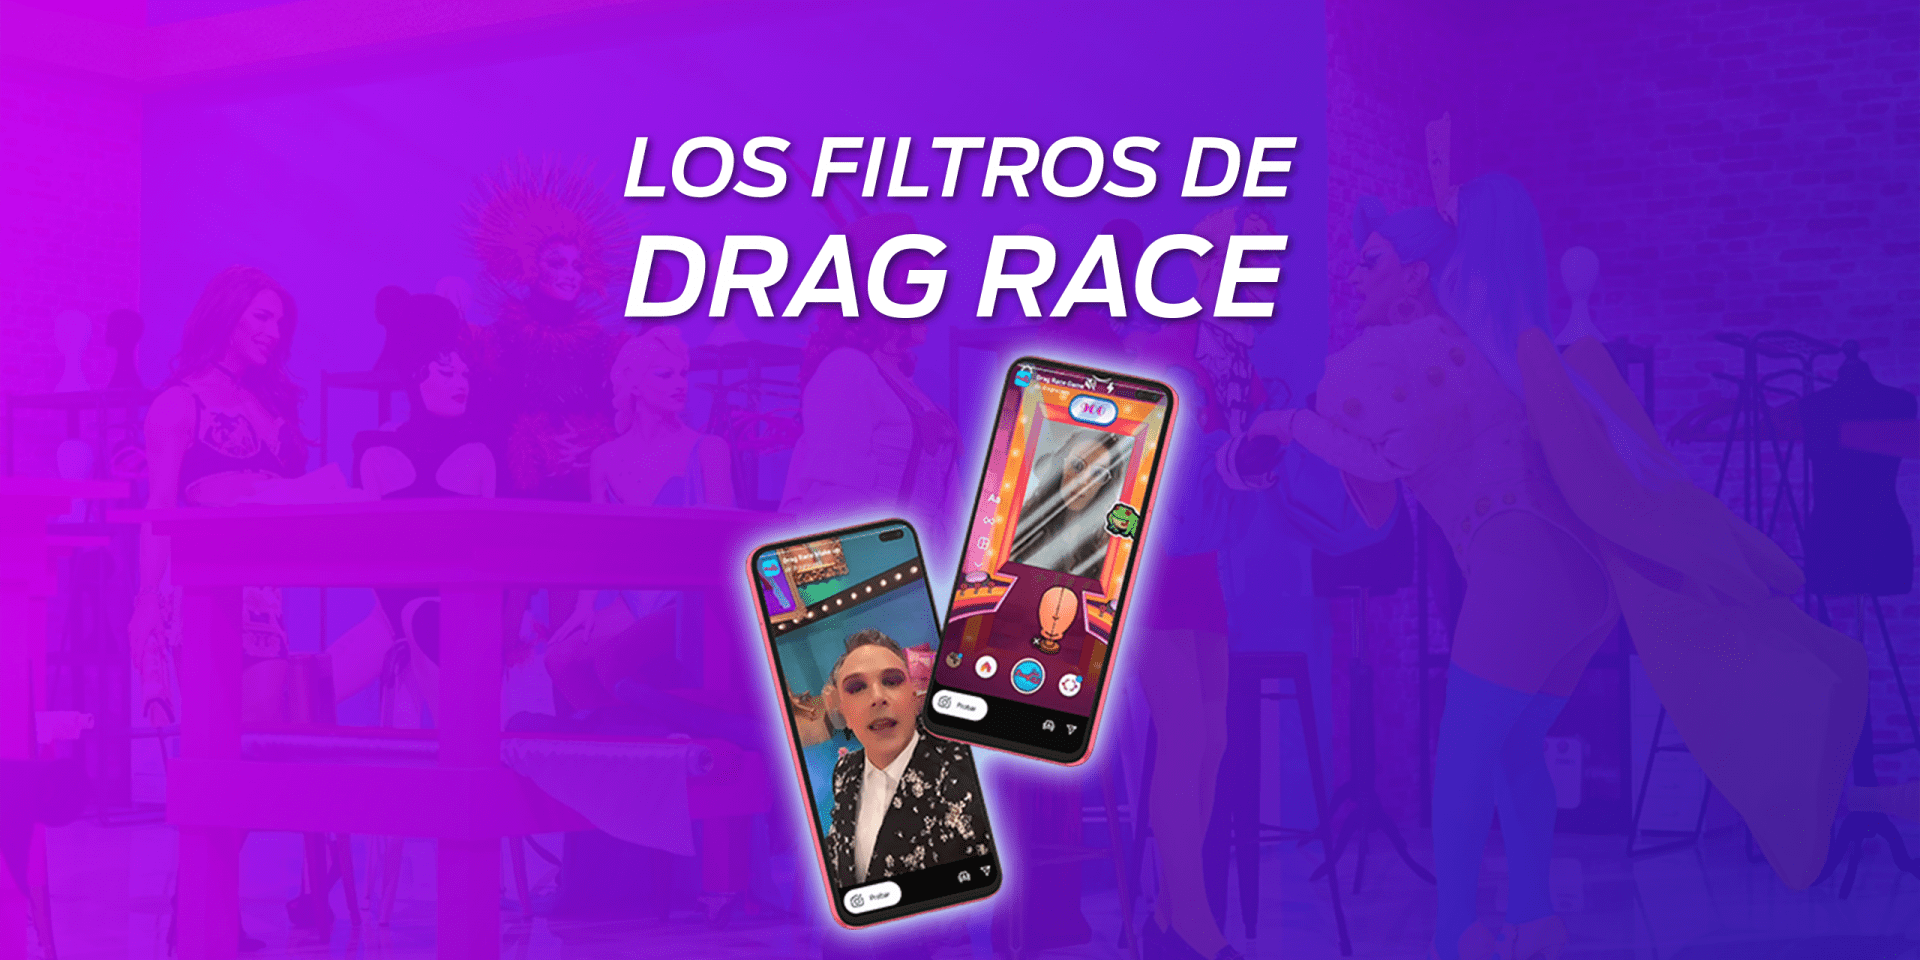 Los filtros de Drag Race